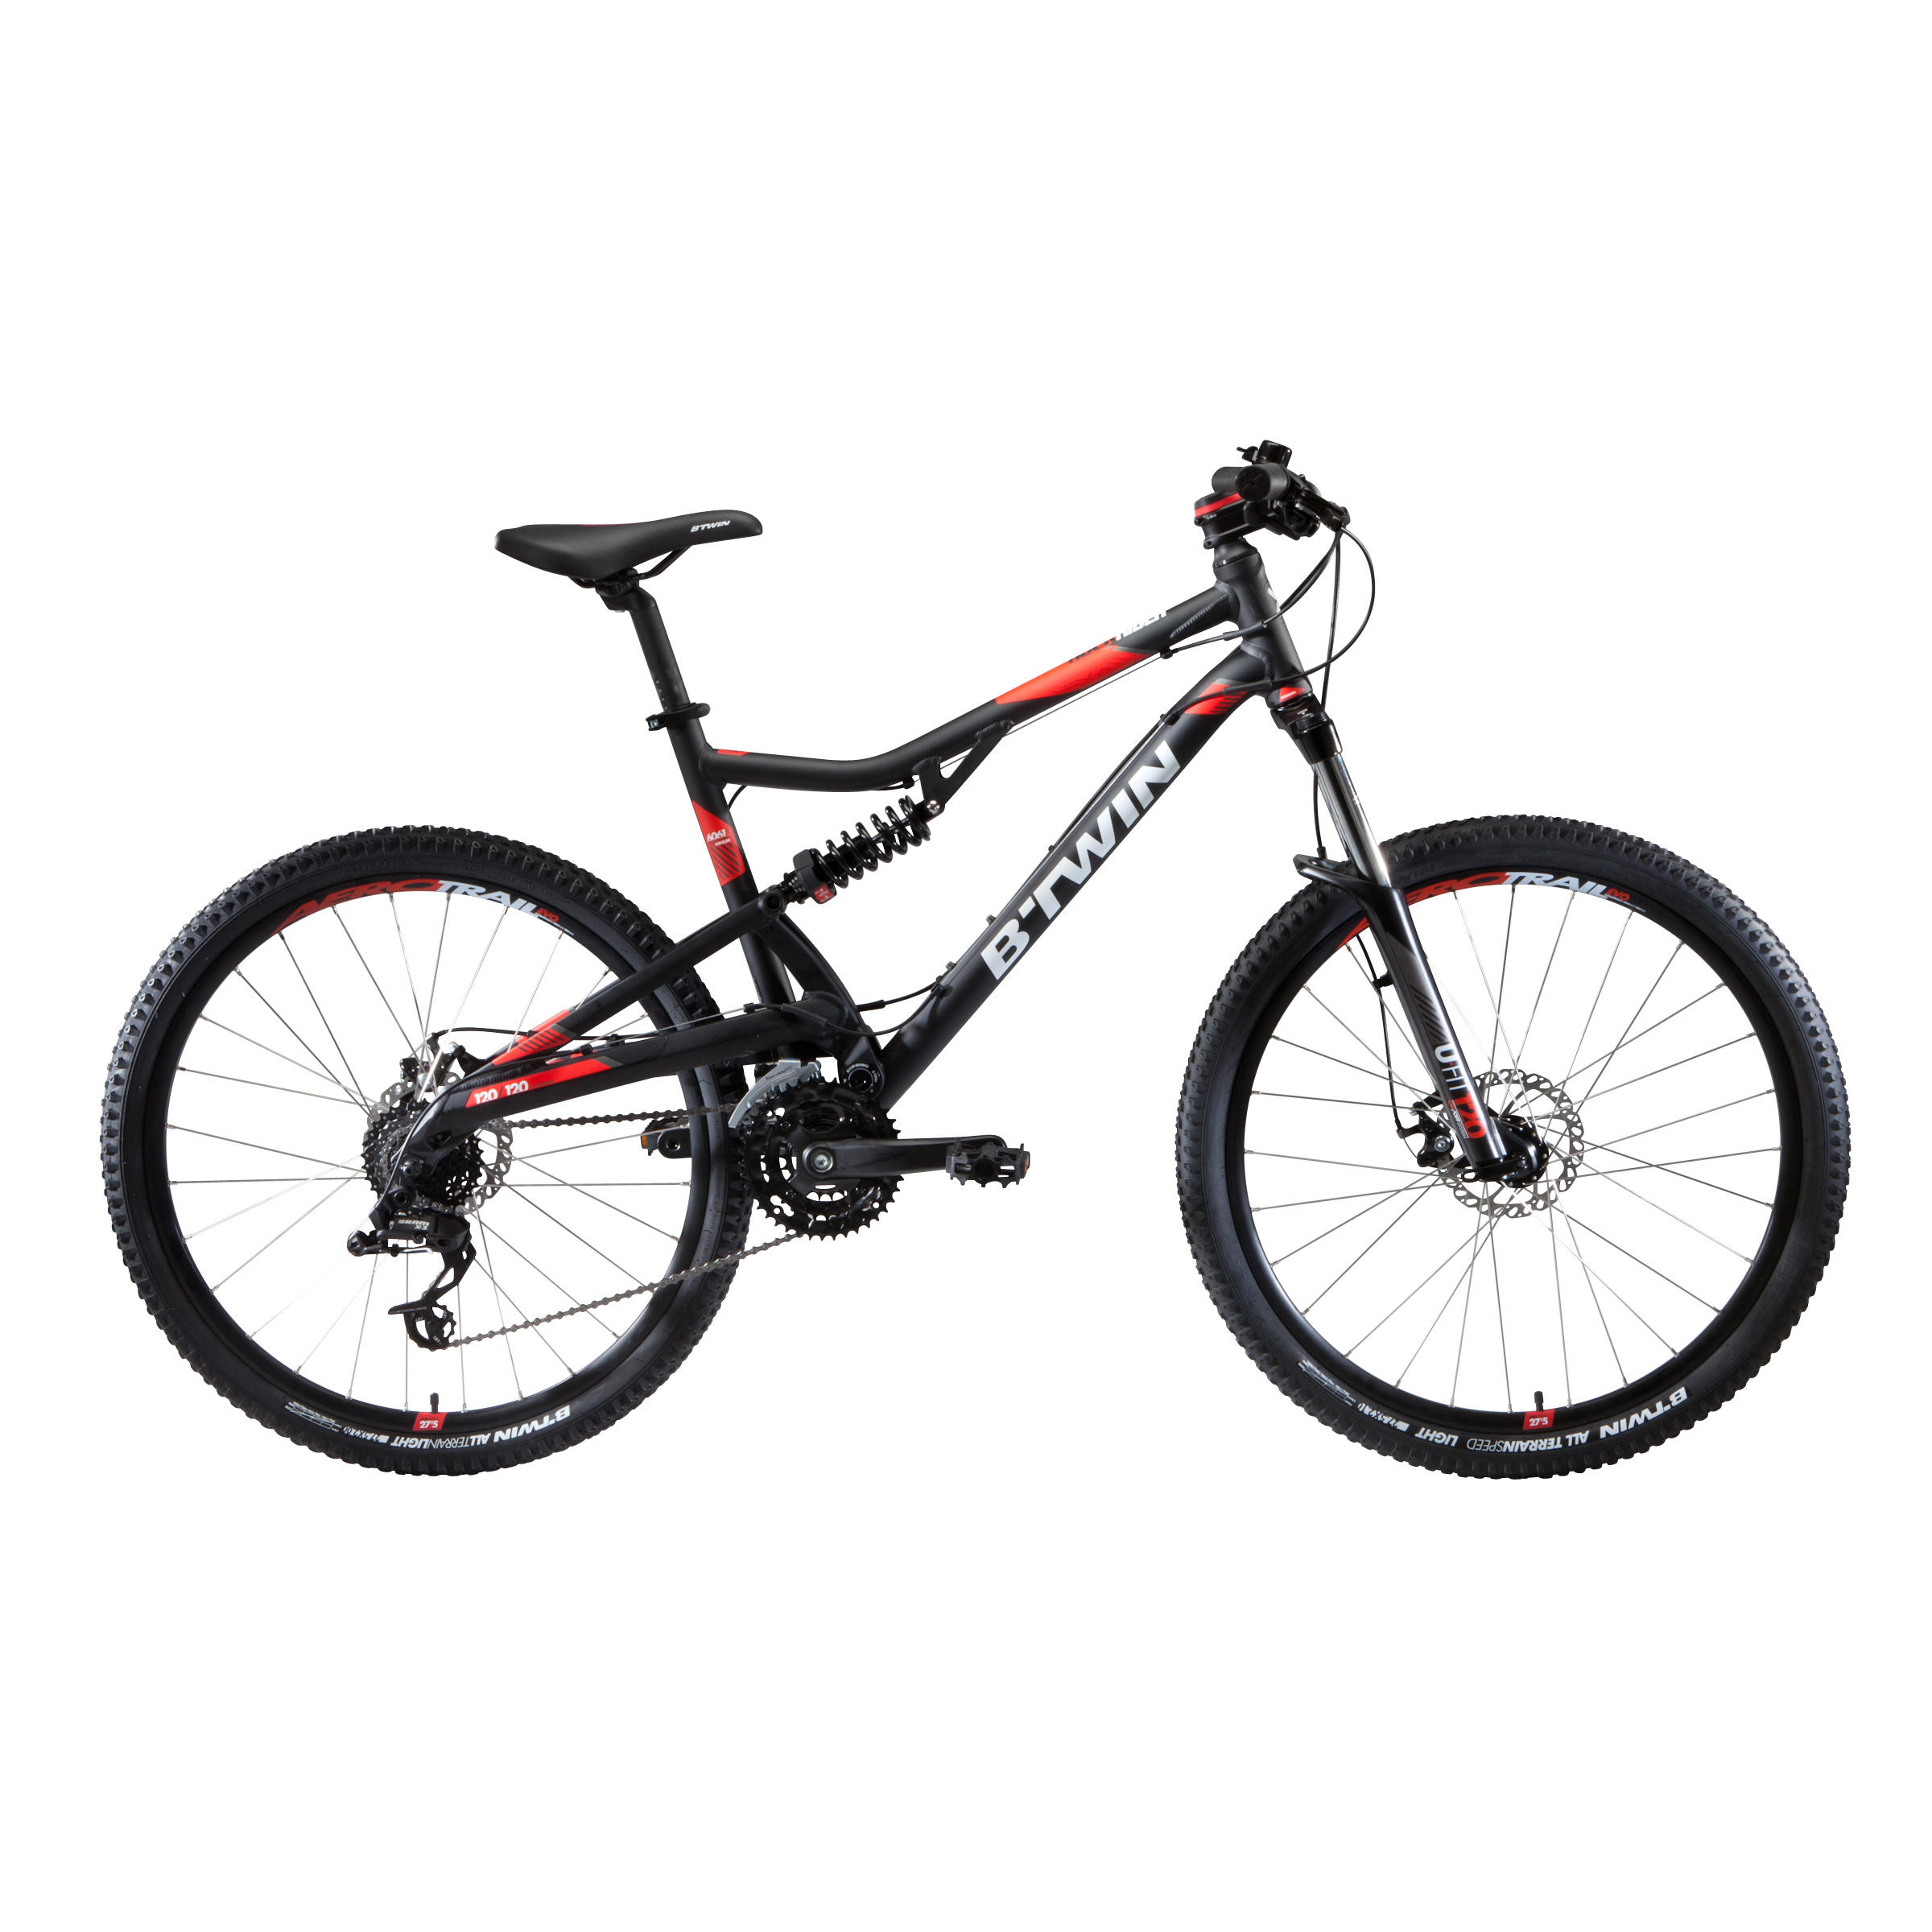 rockrider 520 27.5 mountain bike